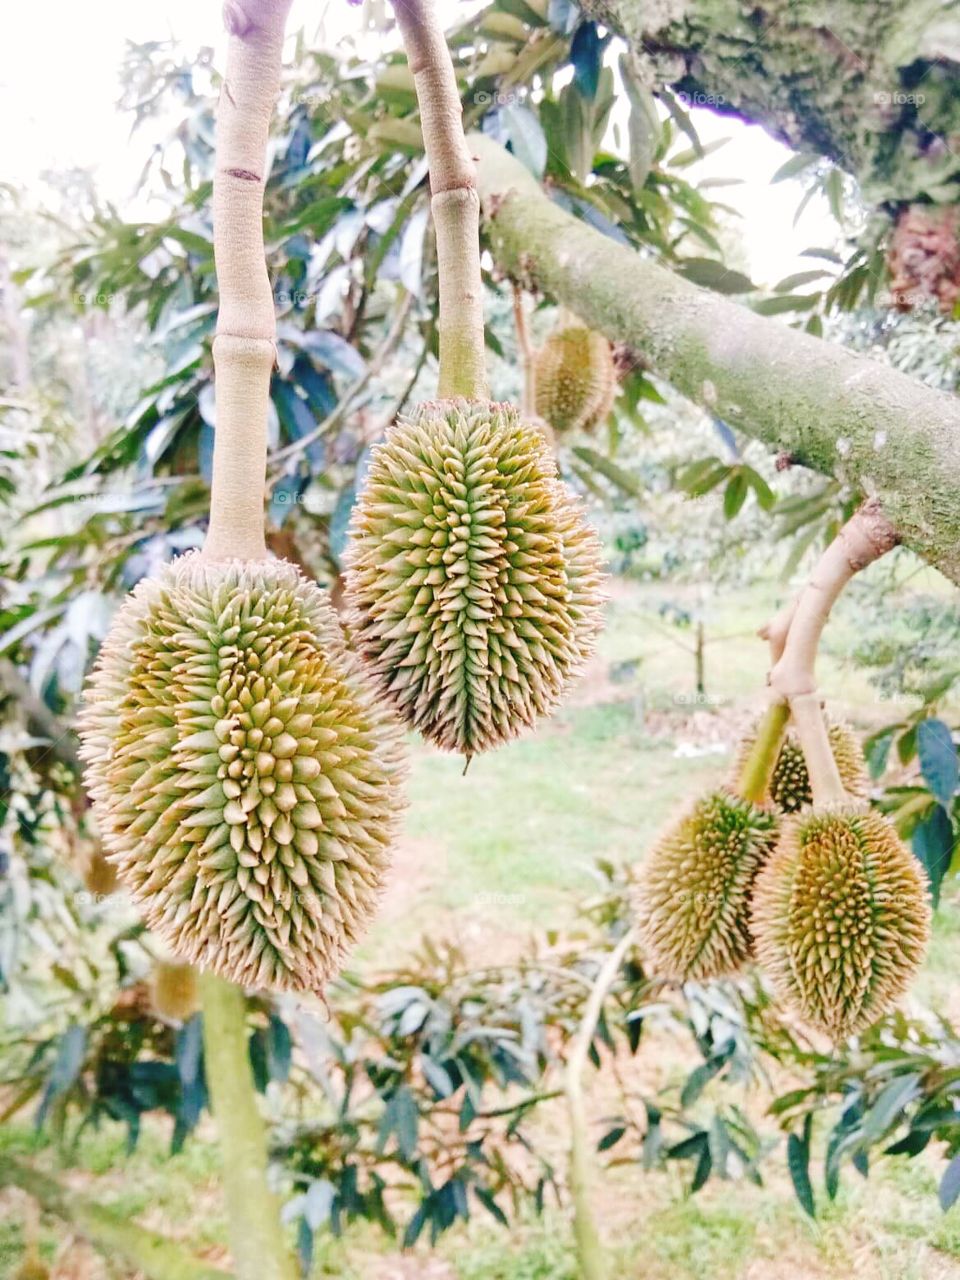 Baby durian in Thailand.